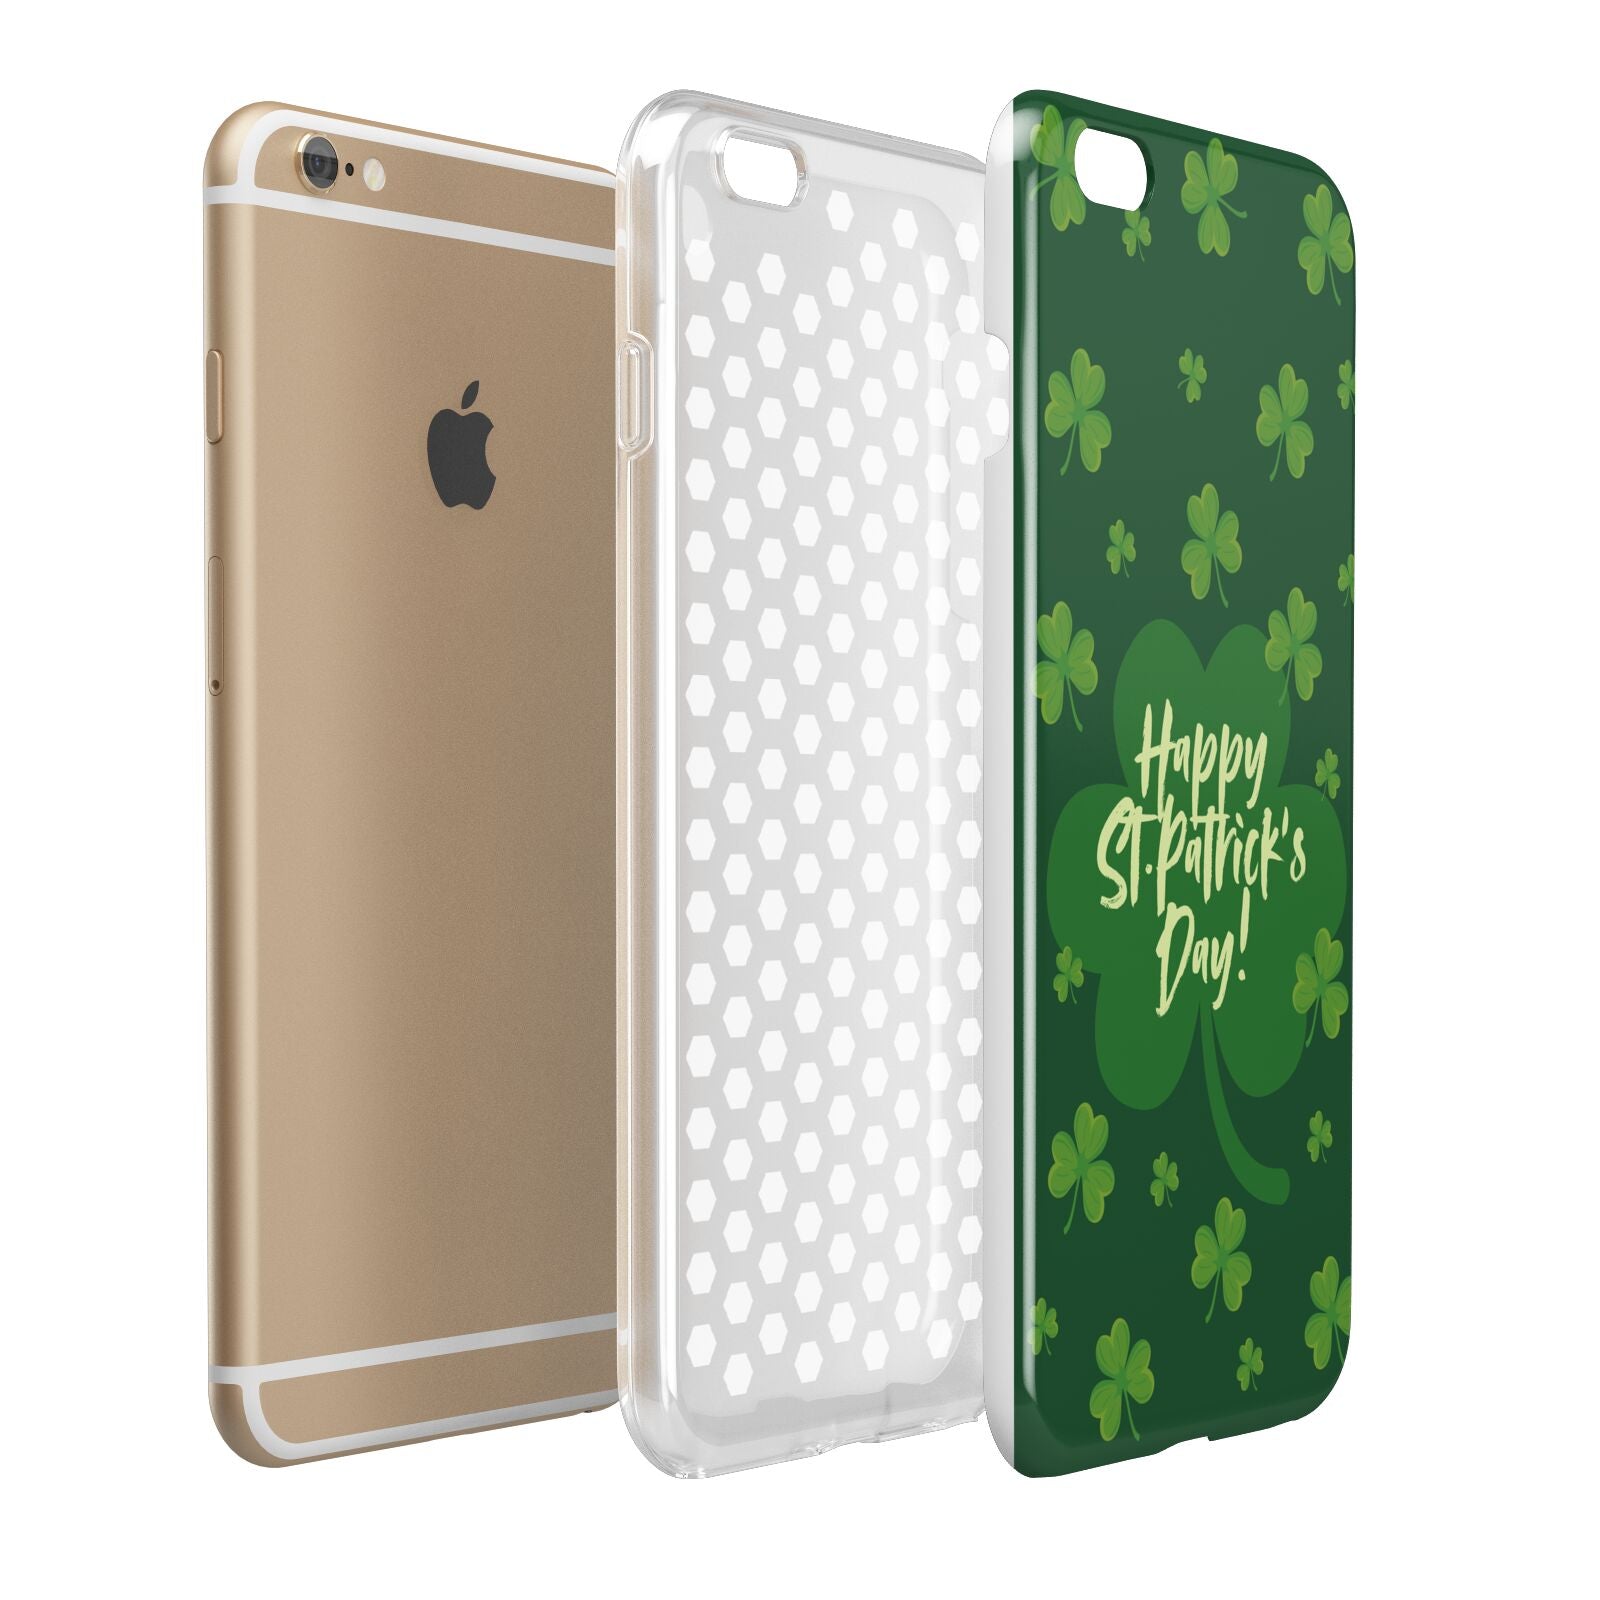 Happy St Patricks Day Apple iPhone 6 Plus 3D Tough Case Expand Detail Image